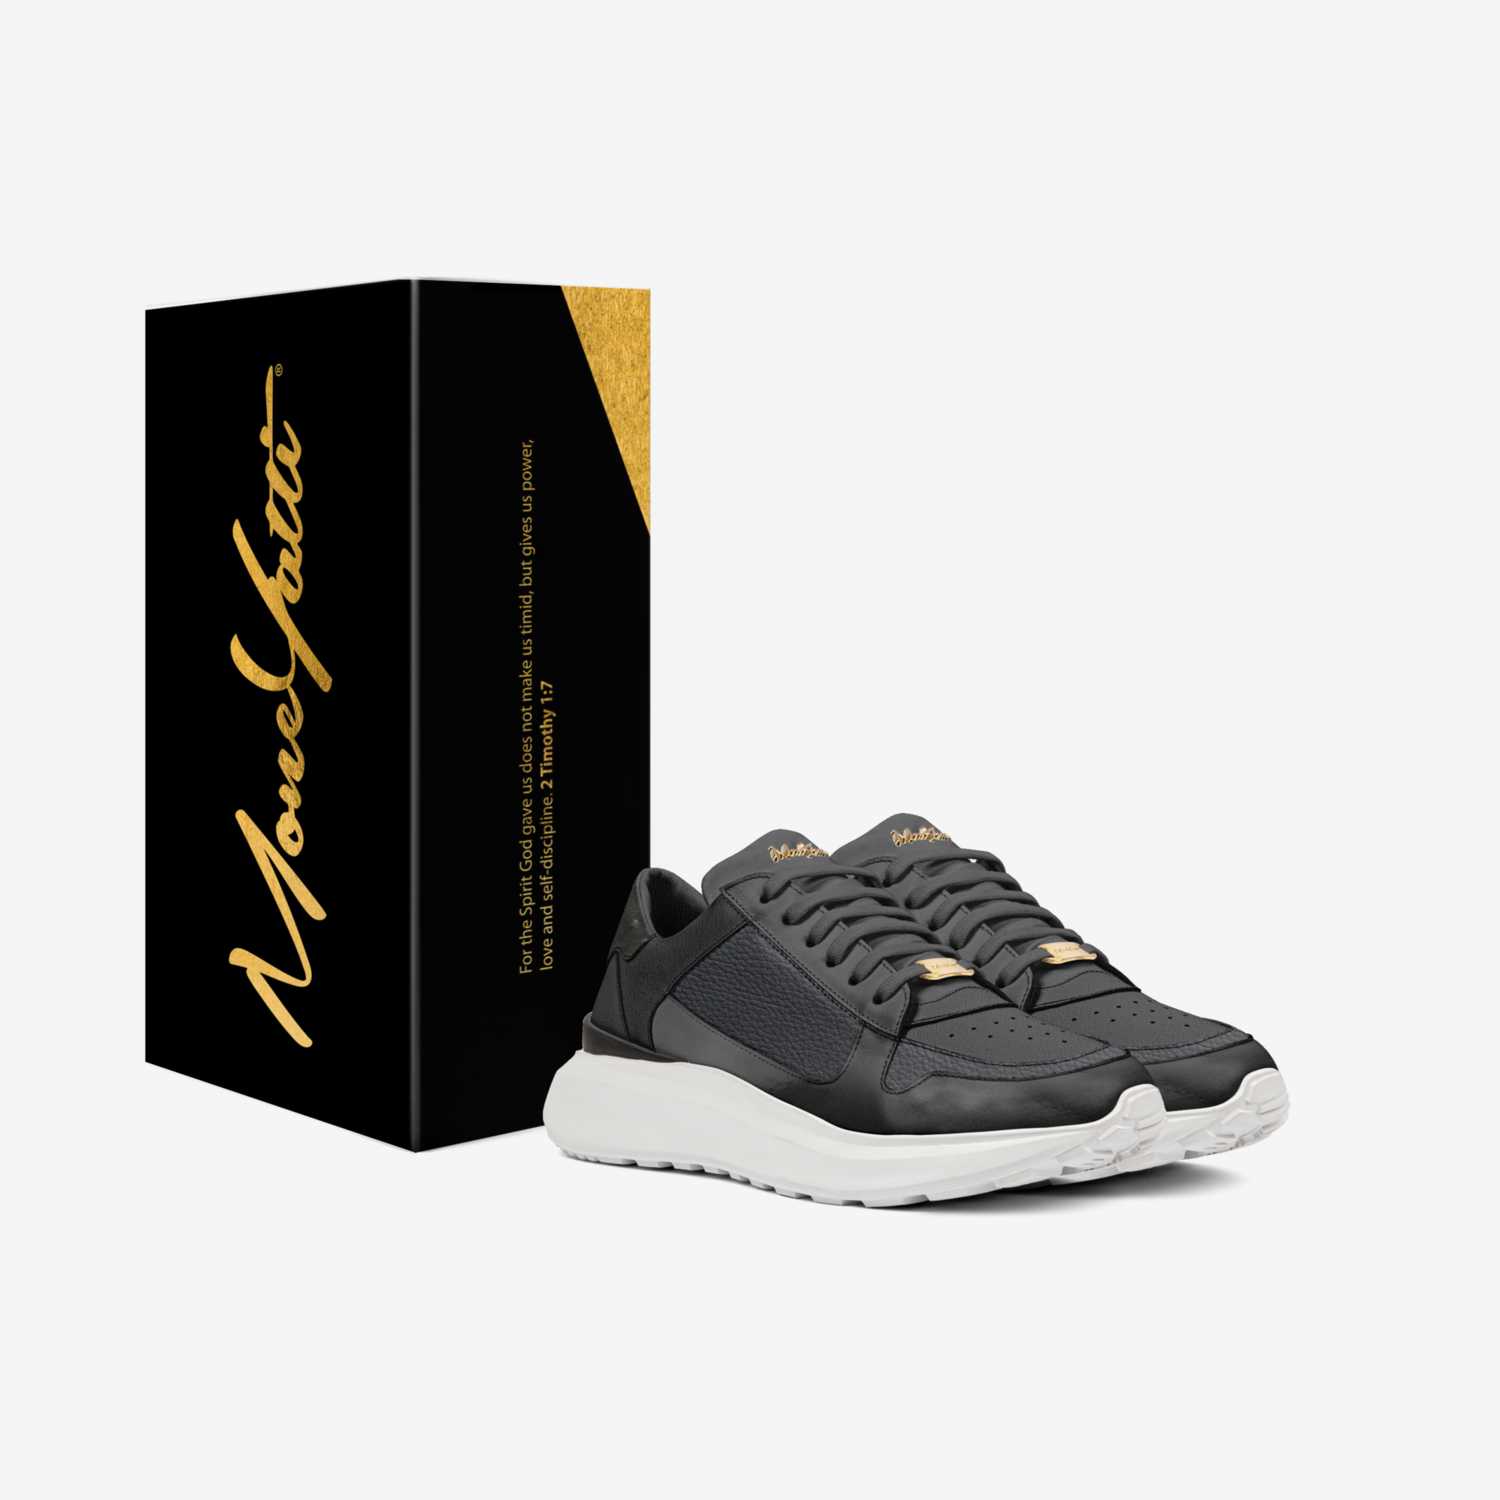  MONEYATTI CI033 custom made in Italy shoes by Moneyatti Brand | Box view